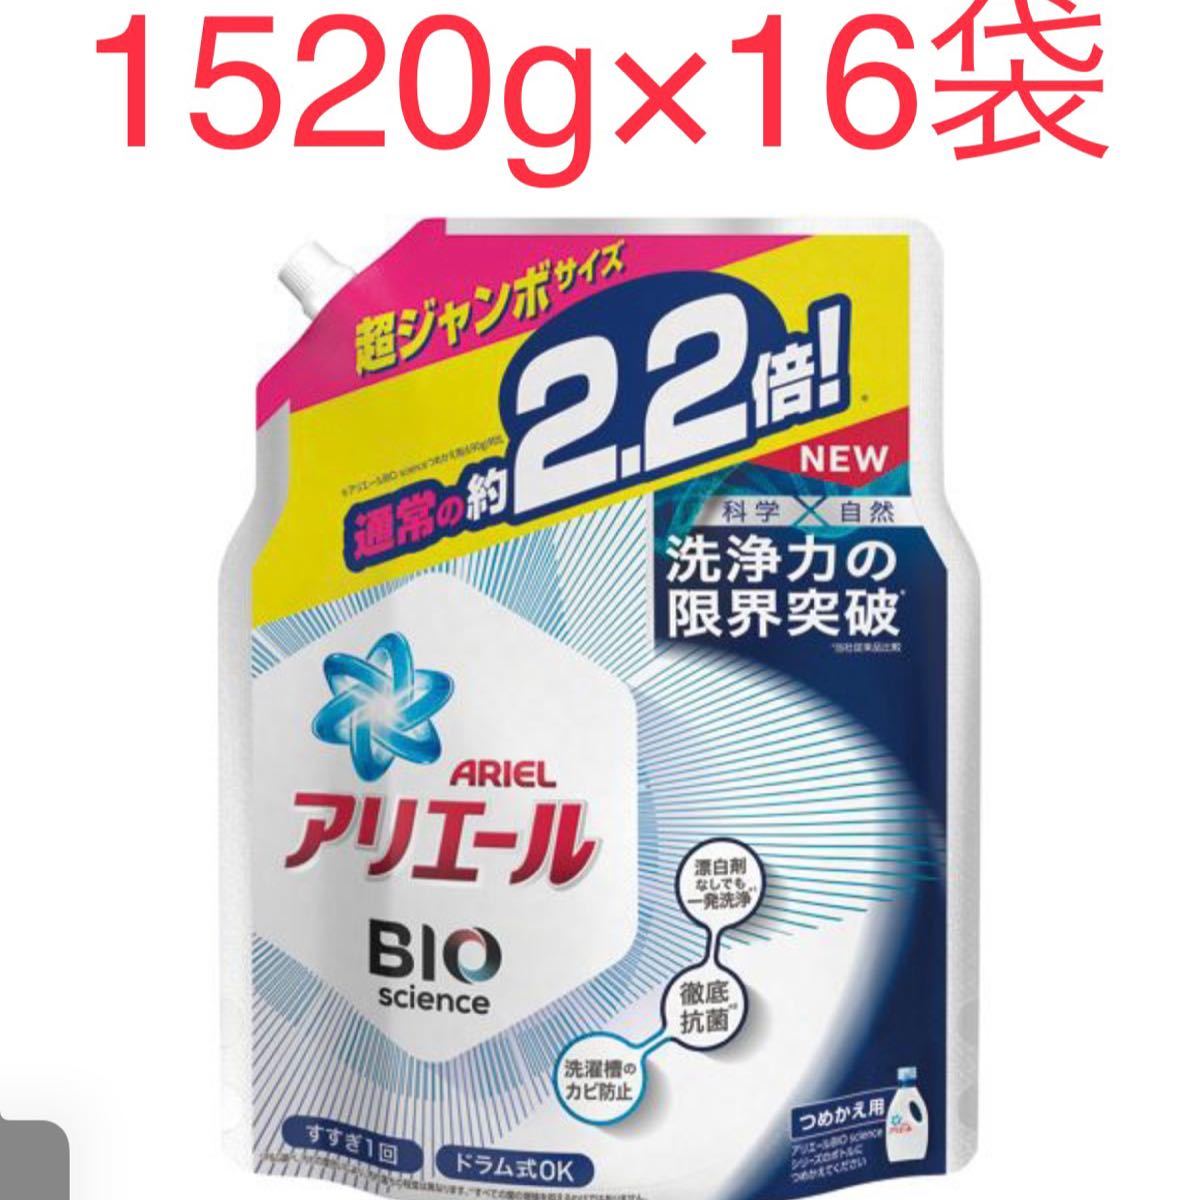 アリエール　バイオサイエンスジェル 詰め替え超ジャンボサイズ 洗濯洗剤 抗菌(1520g 16袋セット)